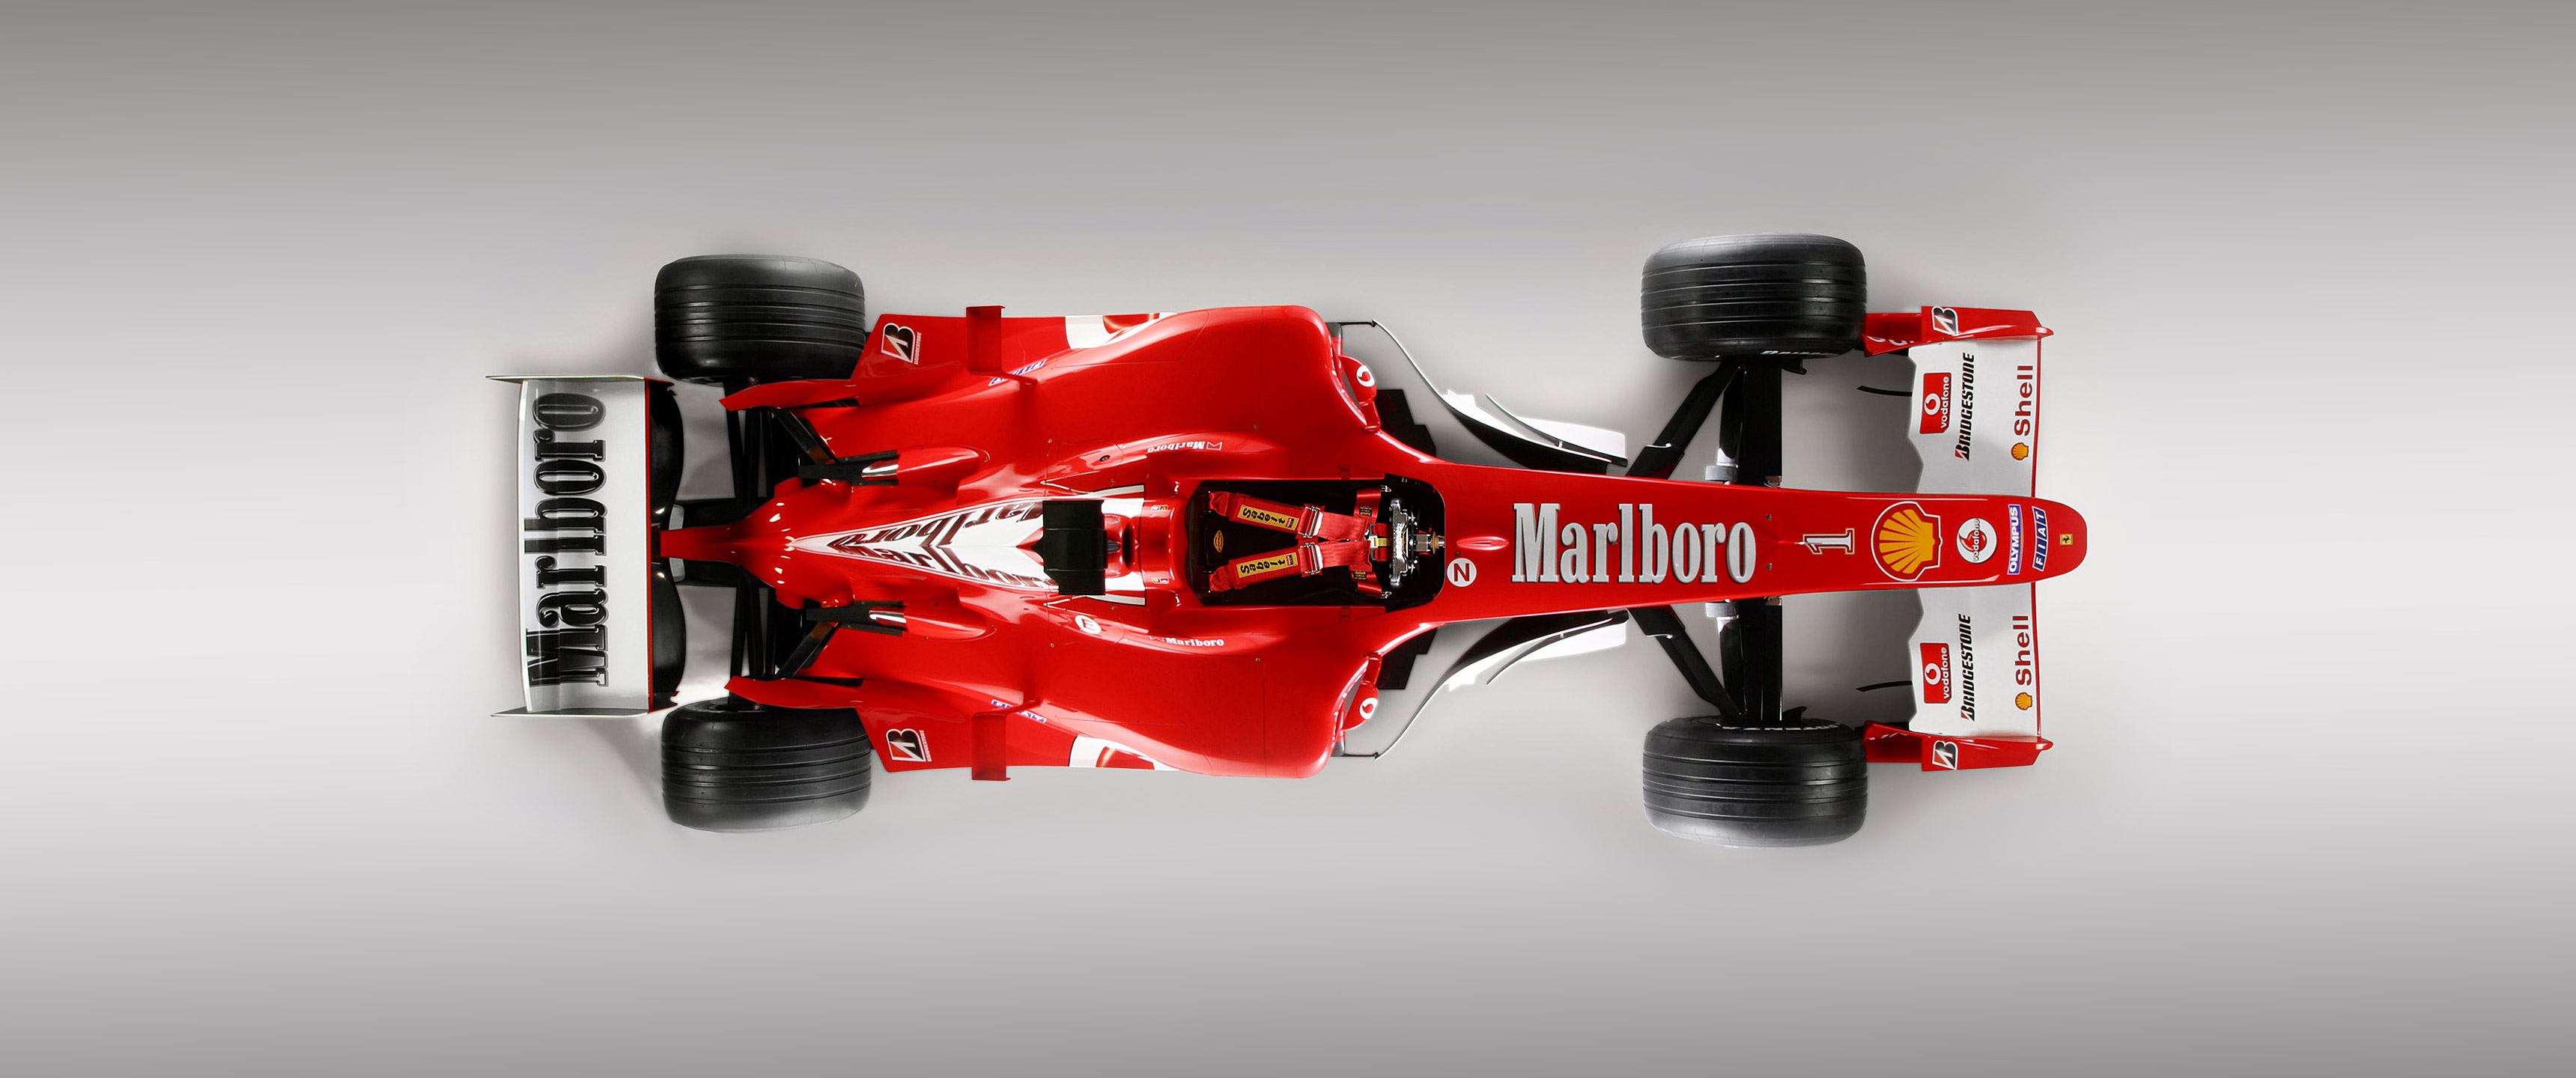 F1 вид сверху. Болид Ferrari f2004. F1 Ferrari f2004. Ferrari f1 2004. F2004.